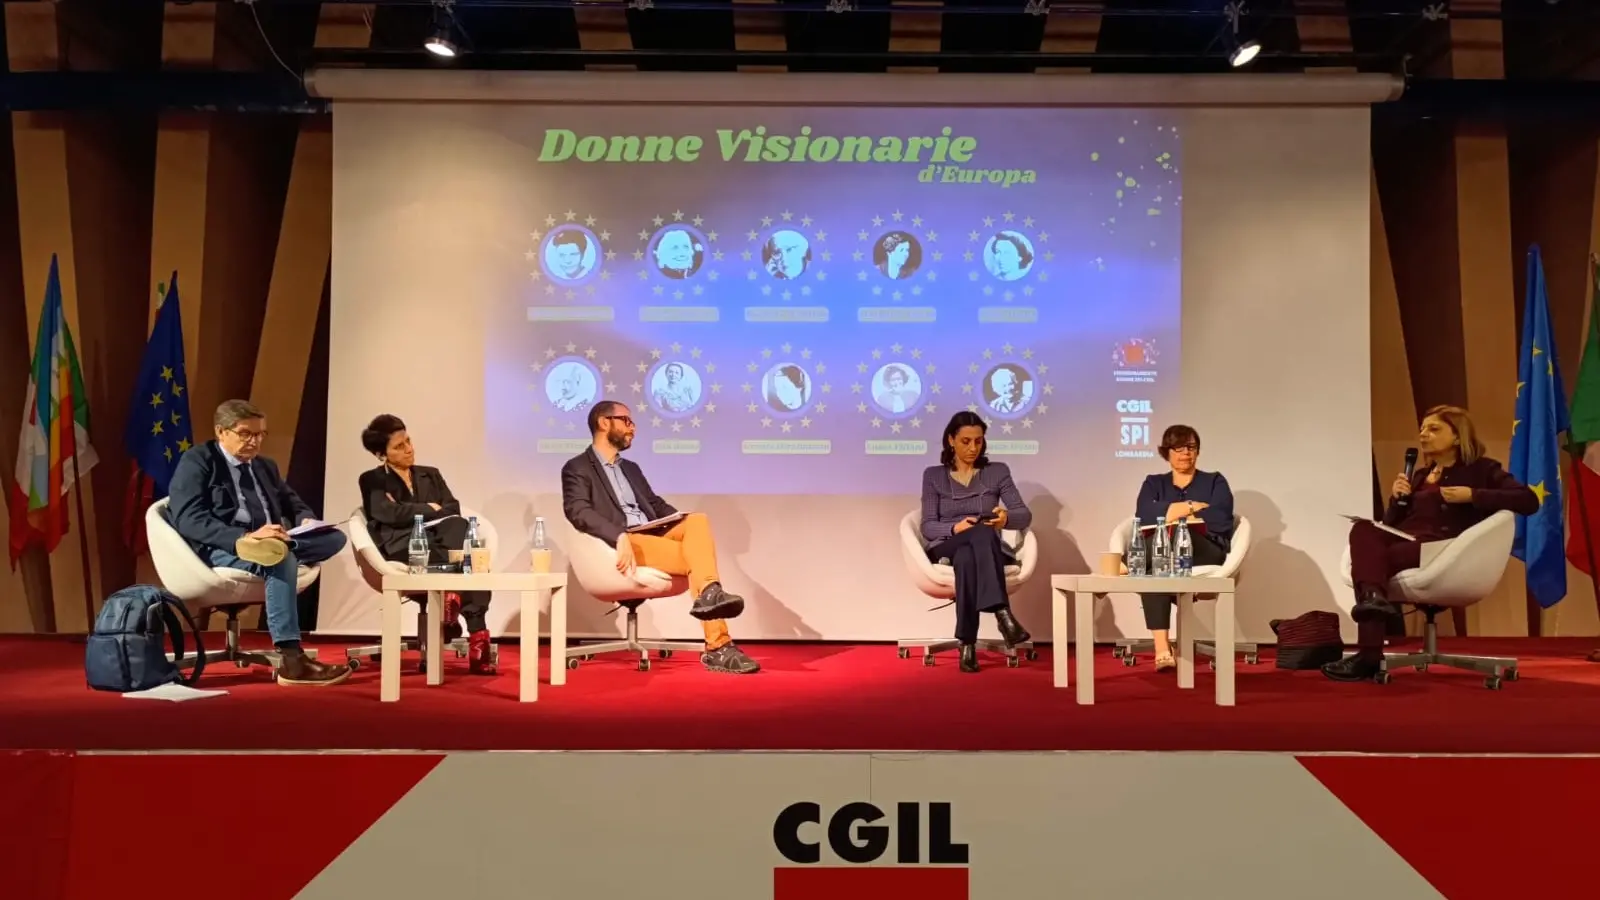 La conferenza dello Spi Lombardia: Donne visionarie d’Europa